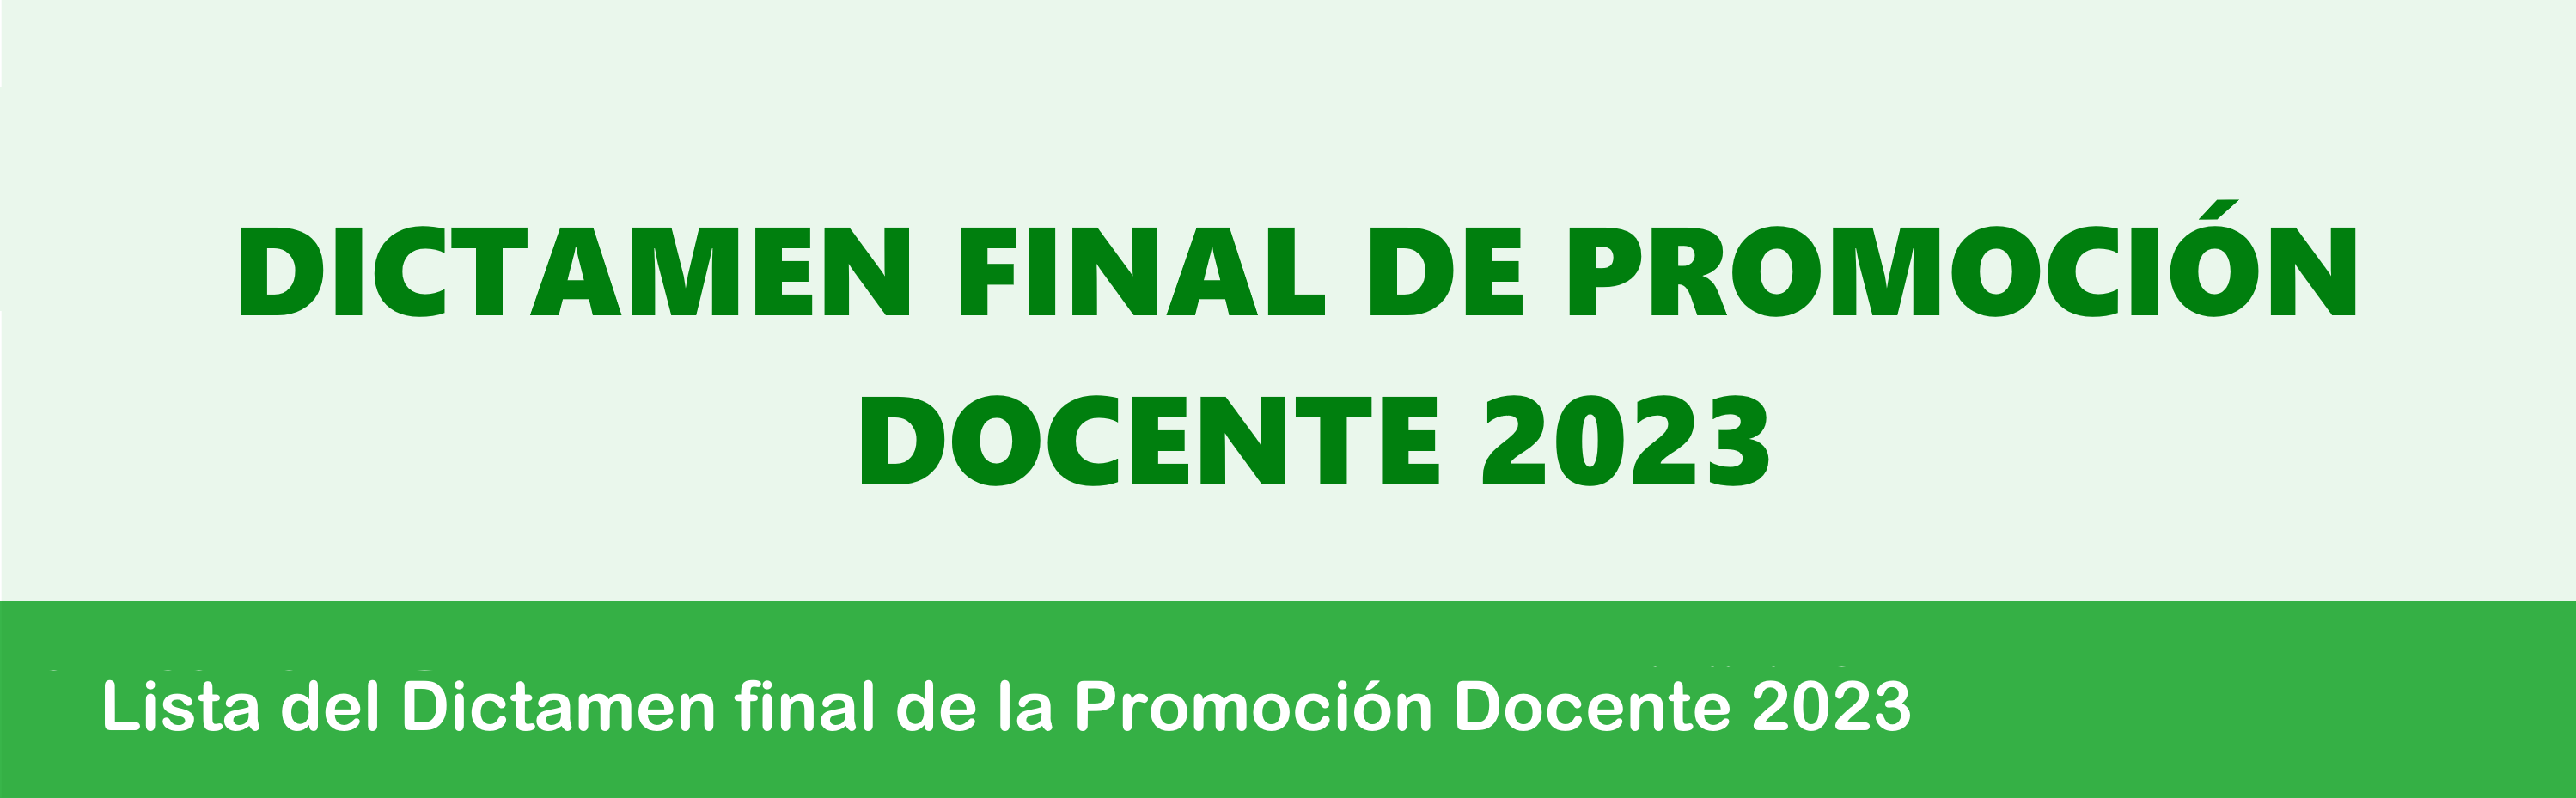 DICTAMEN FINAL DE PROMOCIÓN DOCENTE 2023